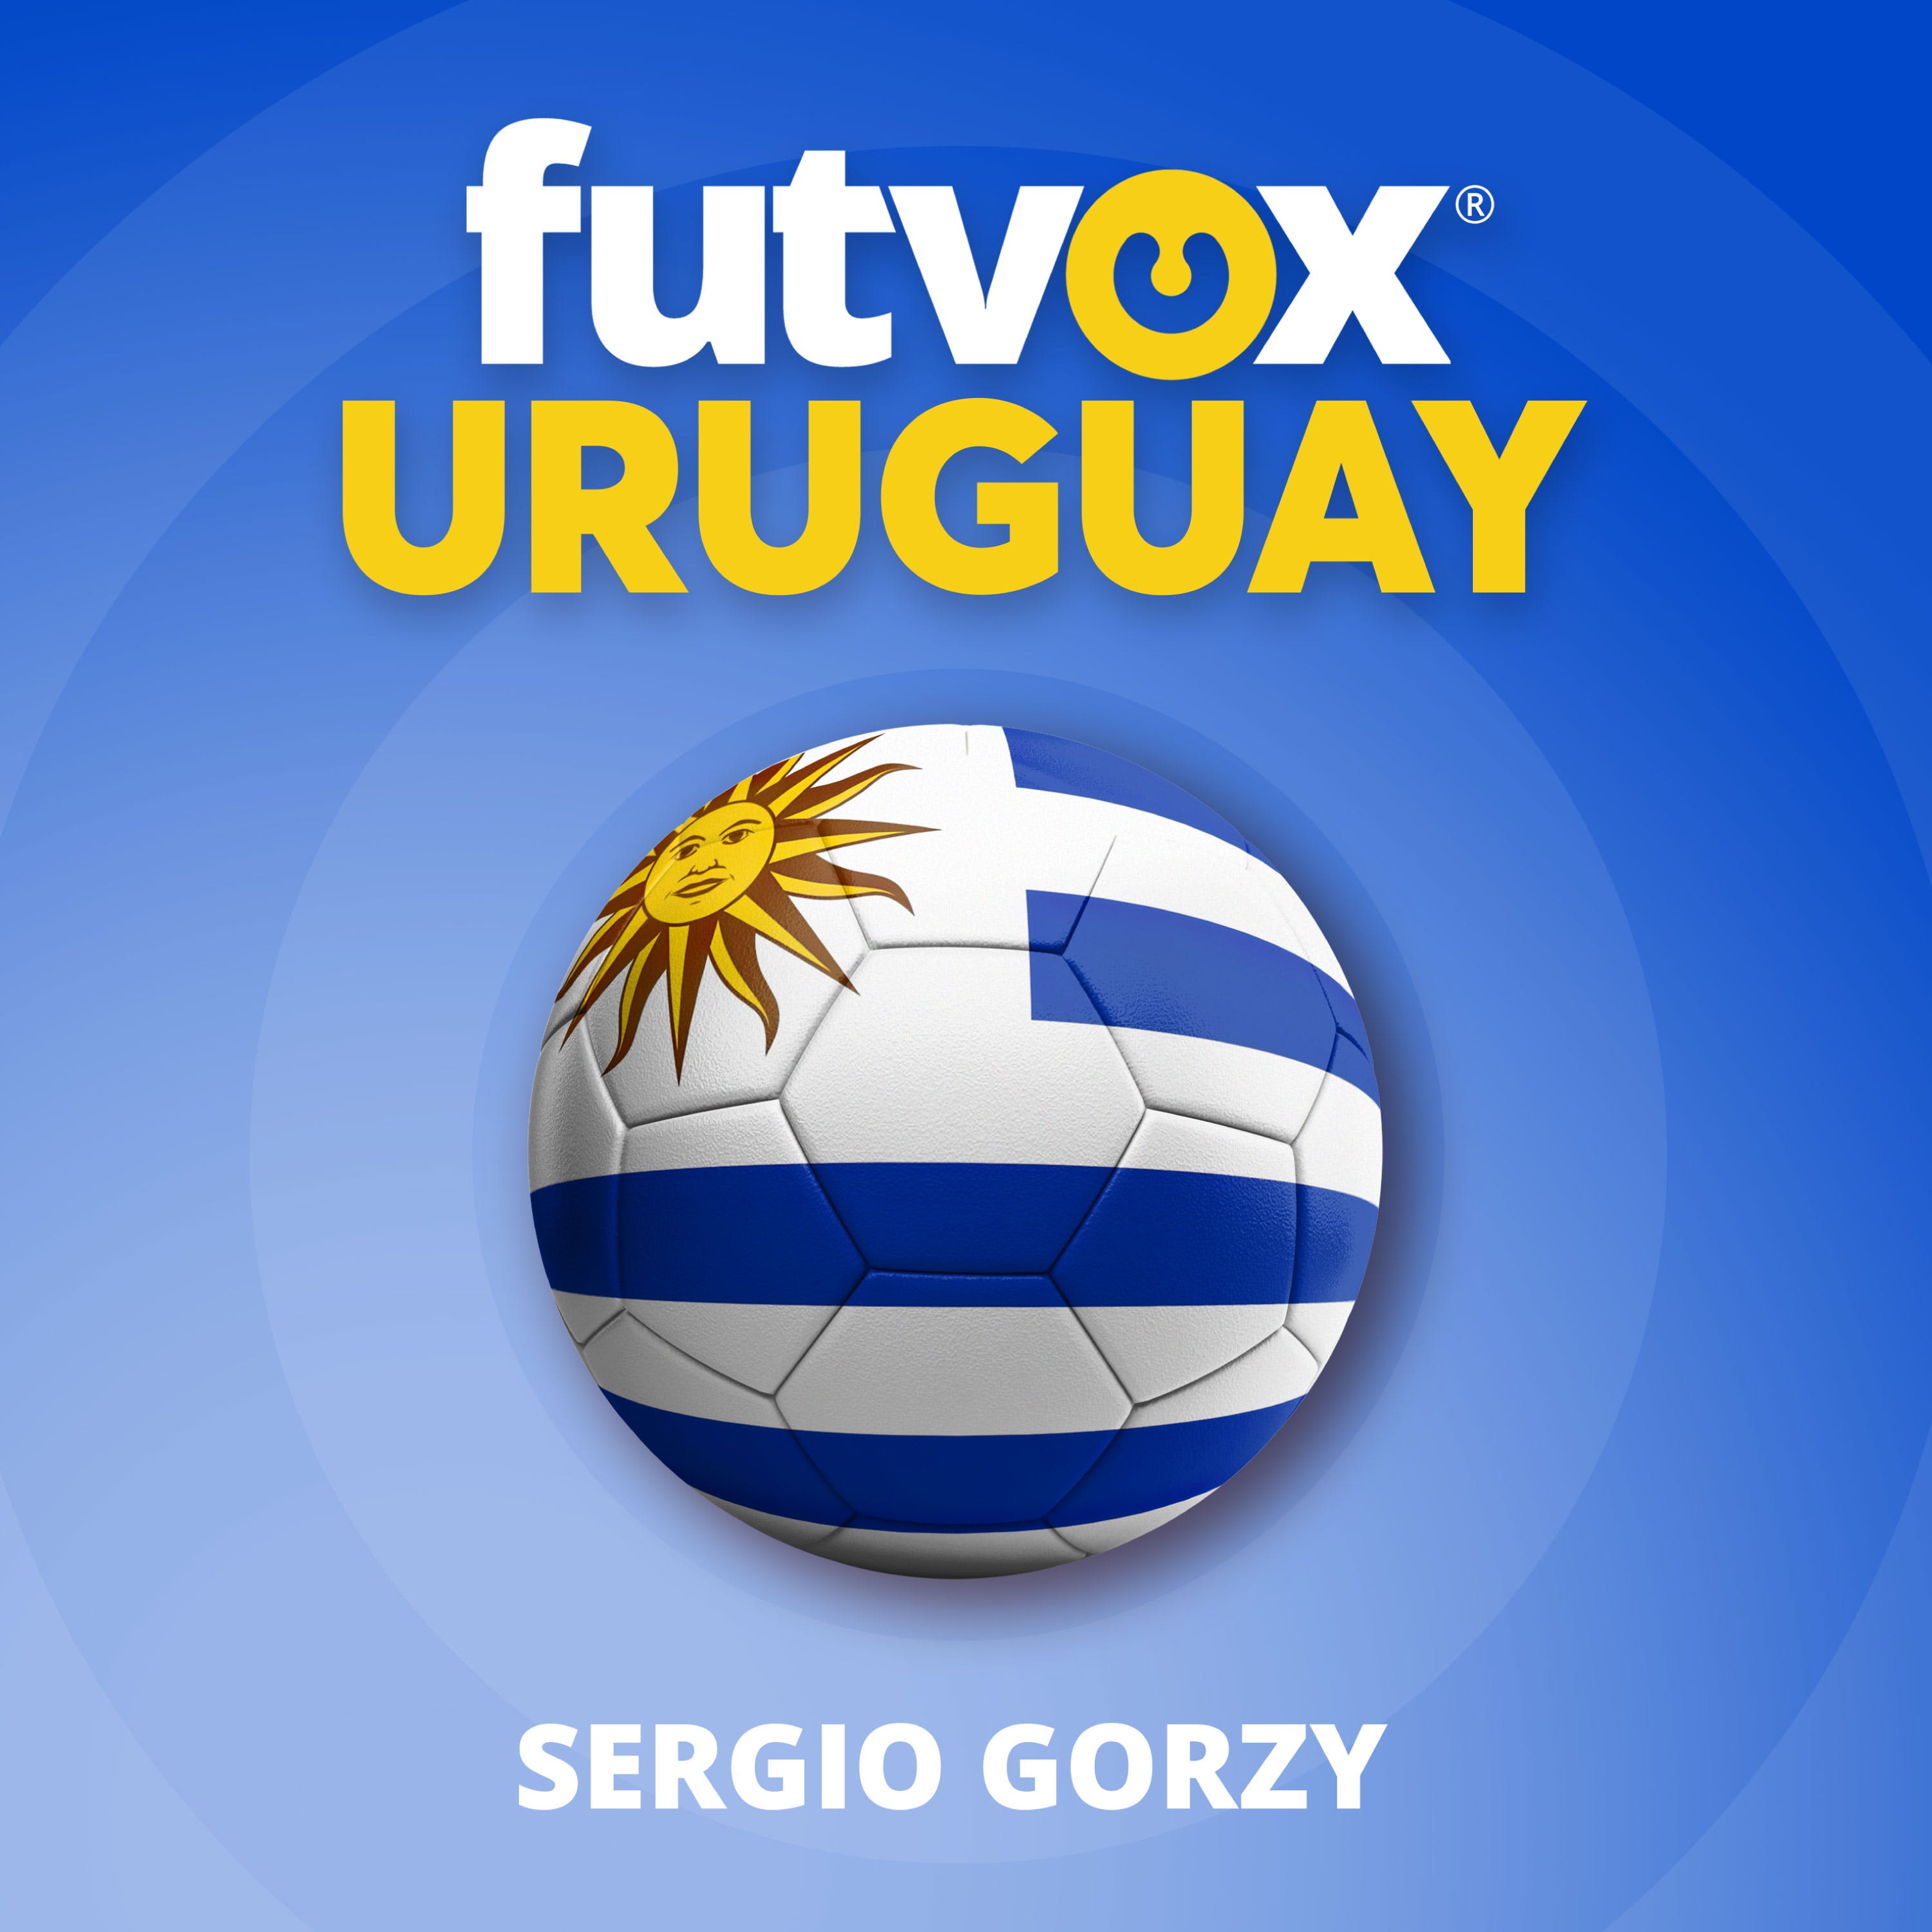 31. El boletaje en Uruguay genera incógnitas